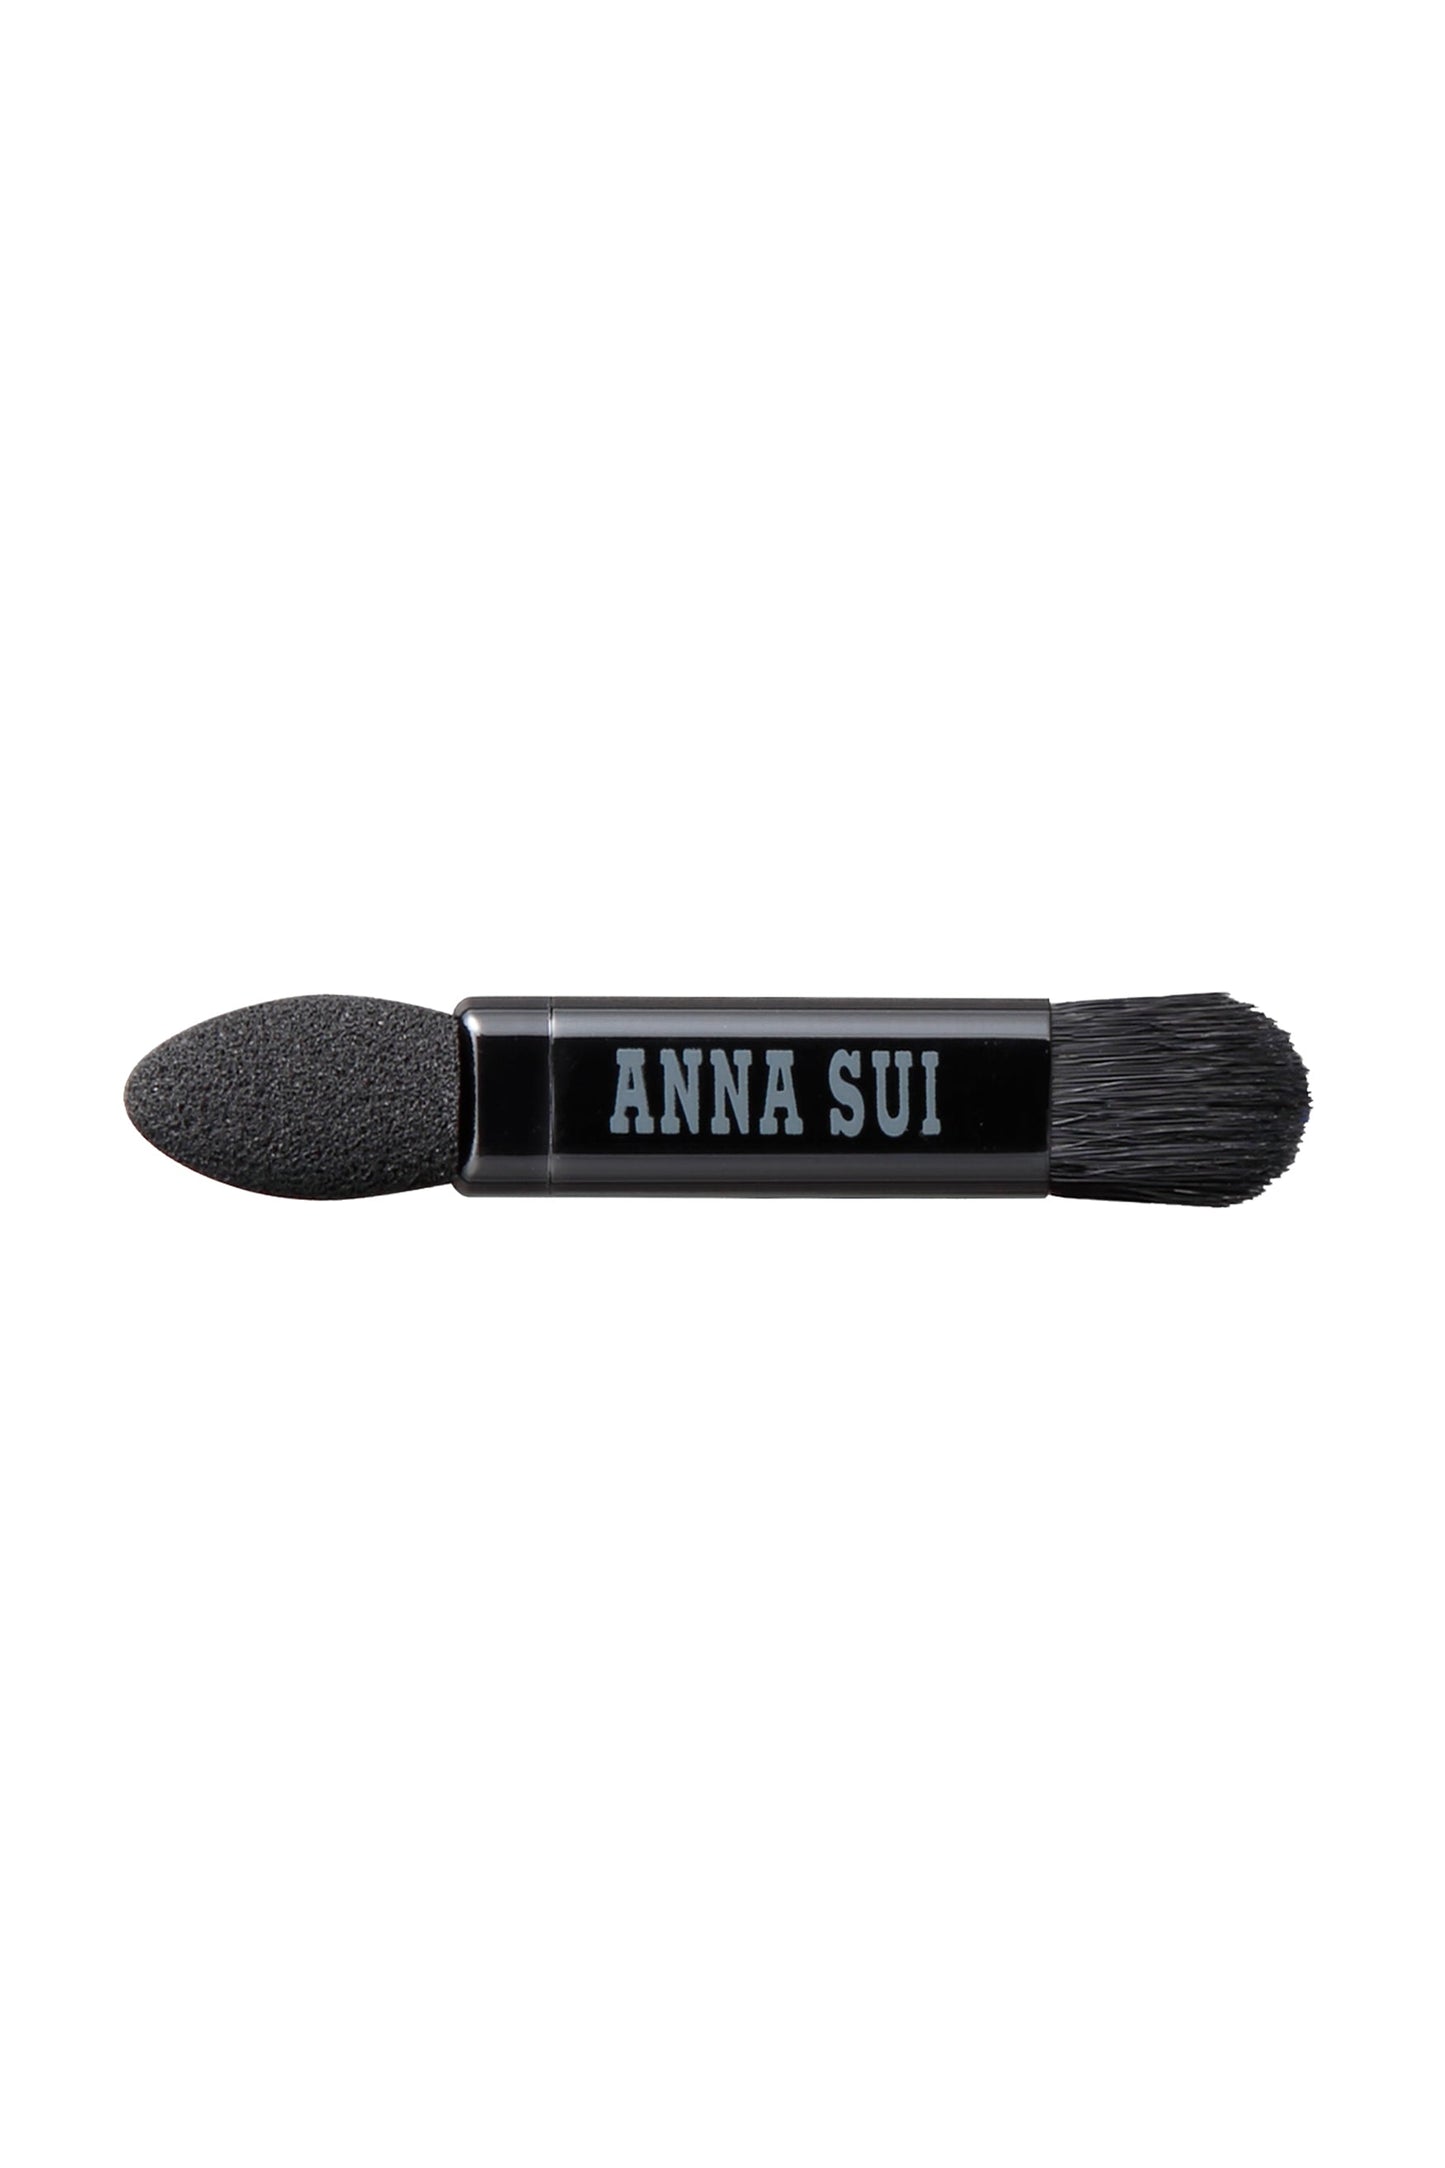 L'applicateur, une tête dure d'un côté, un Bruch de l'autre, l'étiquette Anna Sui au milieu.